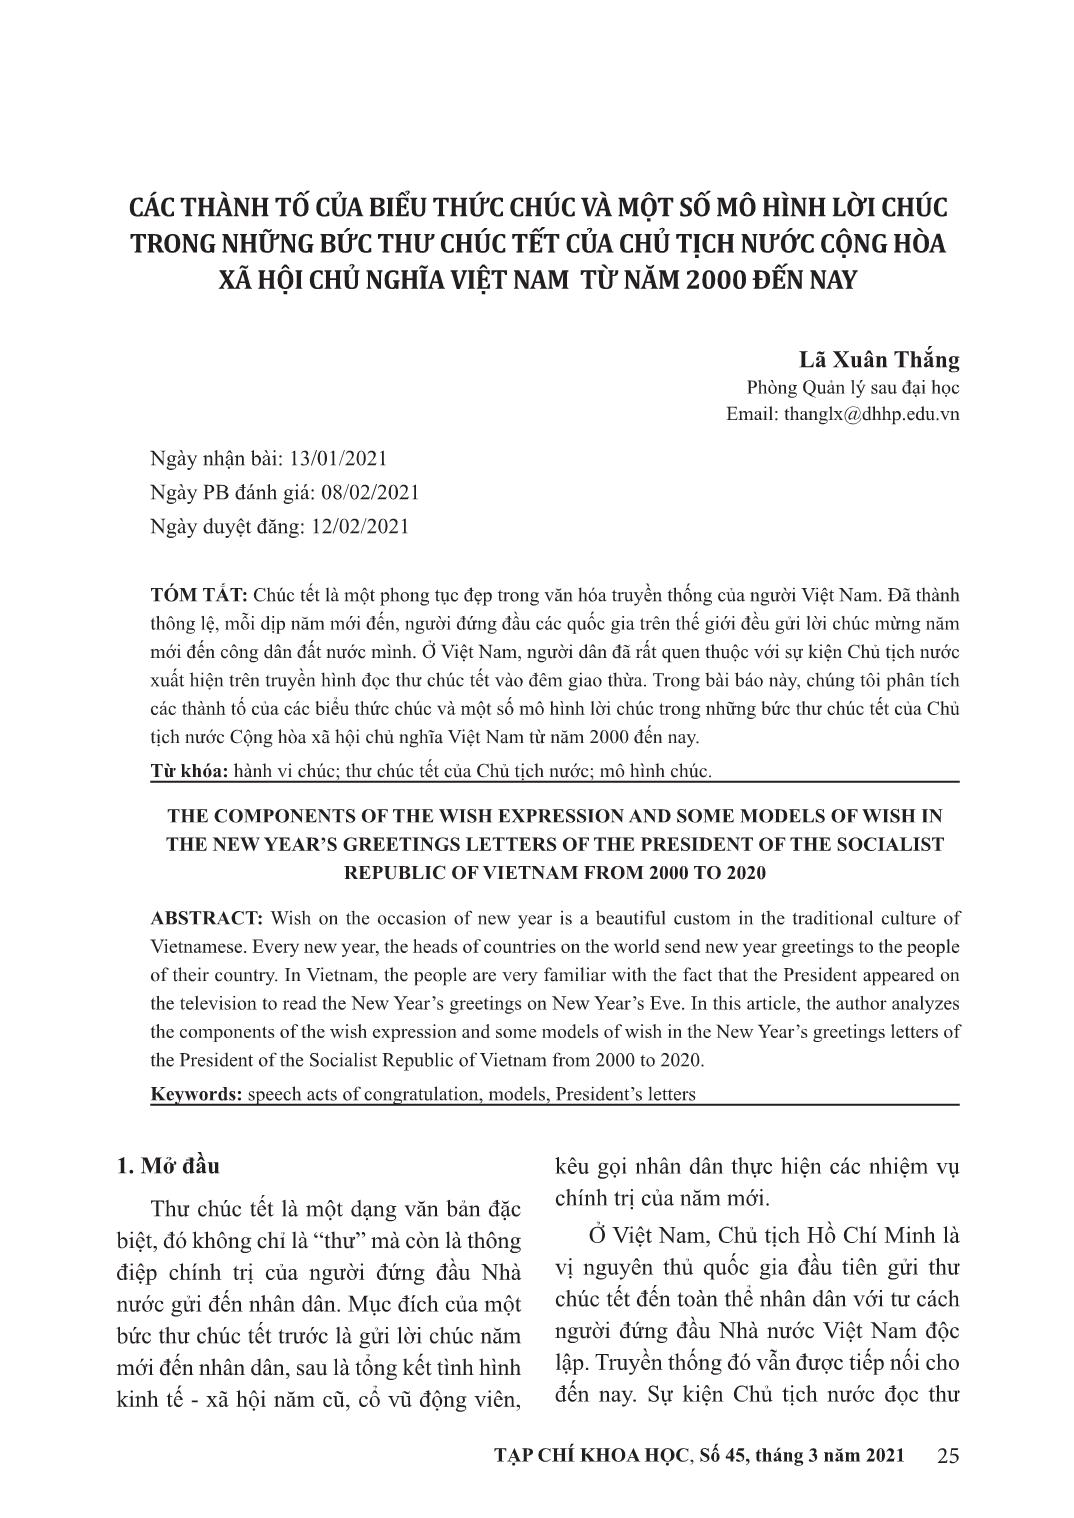 Các thành tố của biều thức chúc và một số mô hình lời chúc trong những bức thư chúc tết của chủ tịch nước cộng hòa xã hội chủ nghĩa Việt Nam từ năm 2000 đến nay trang 1